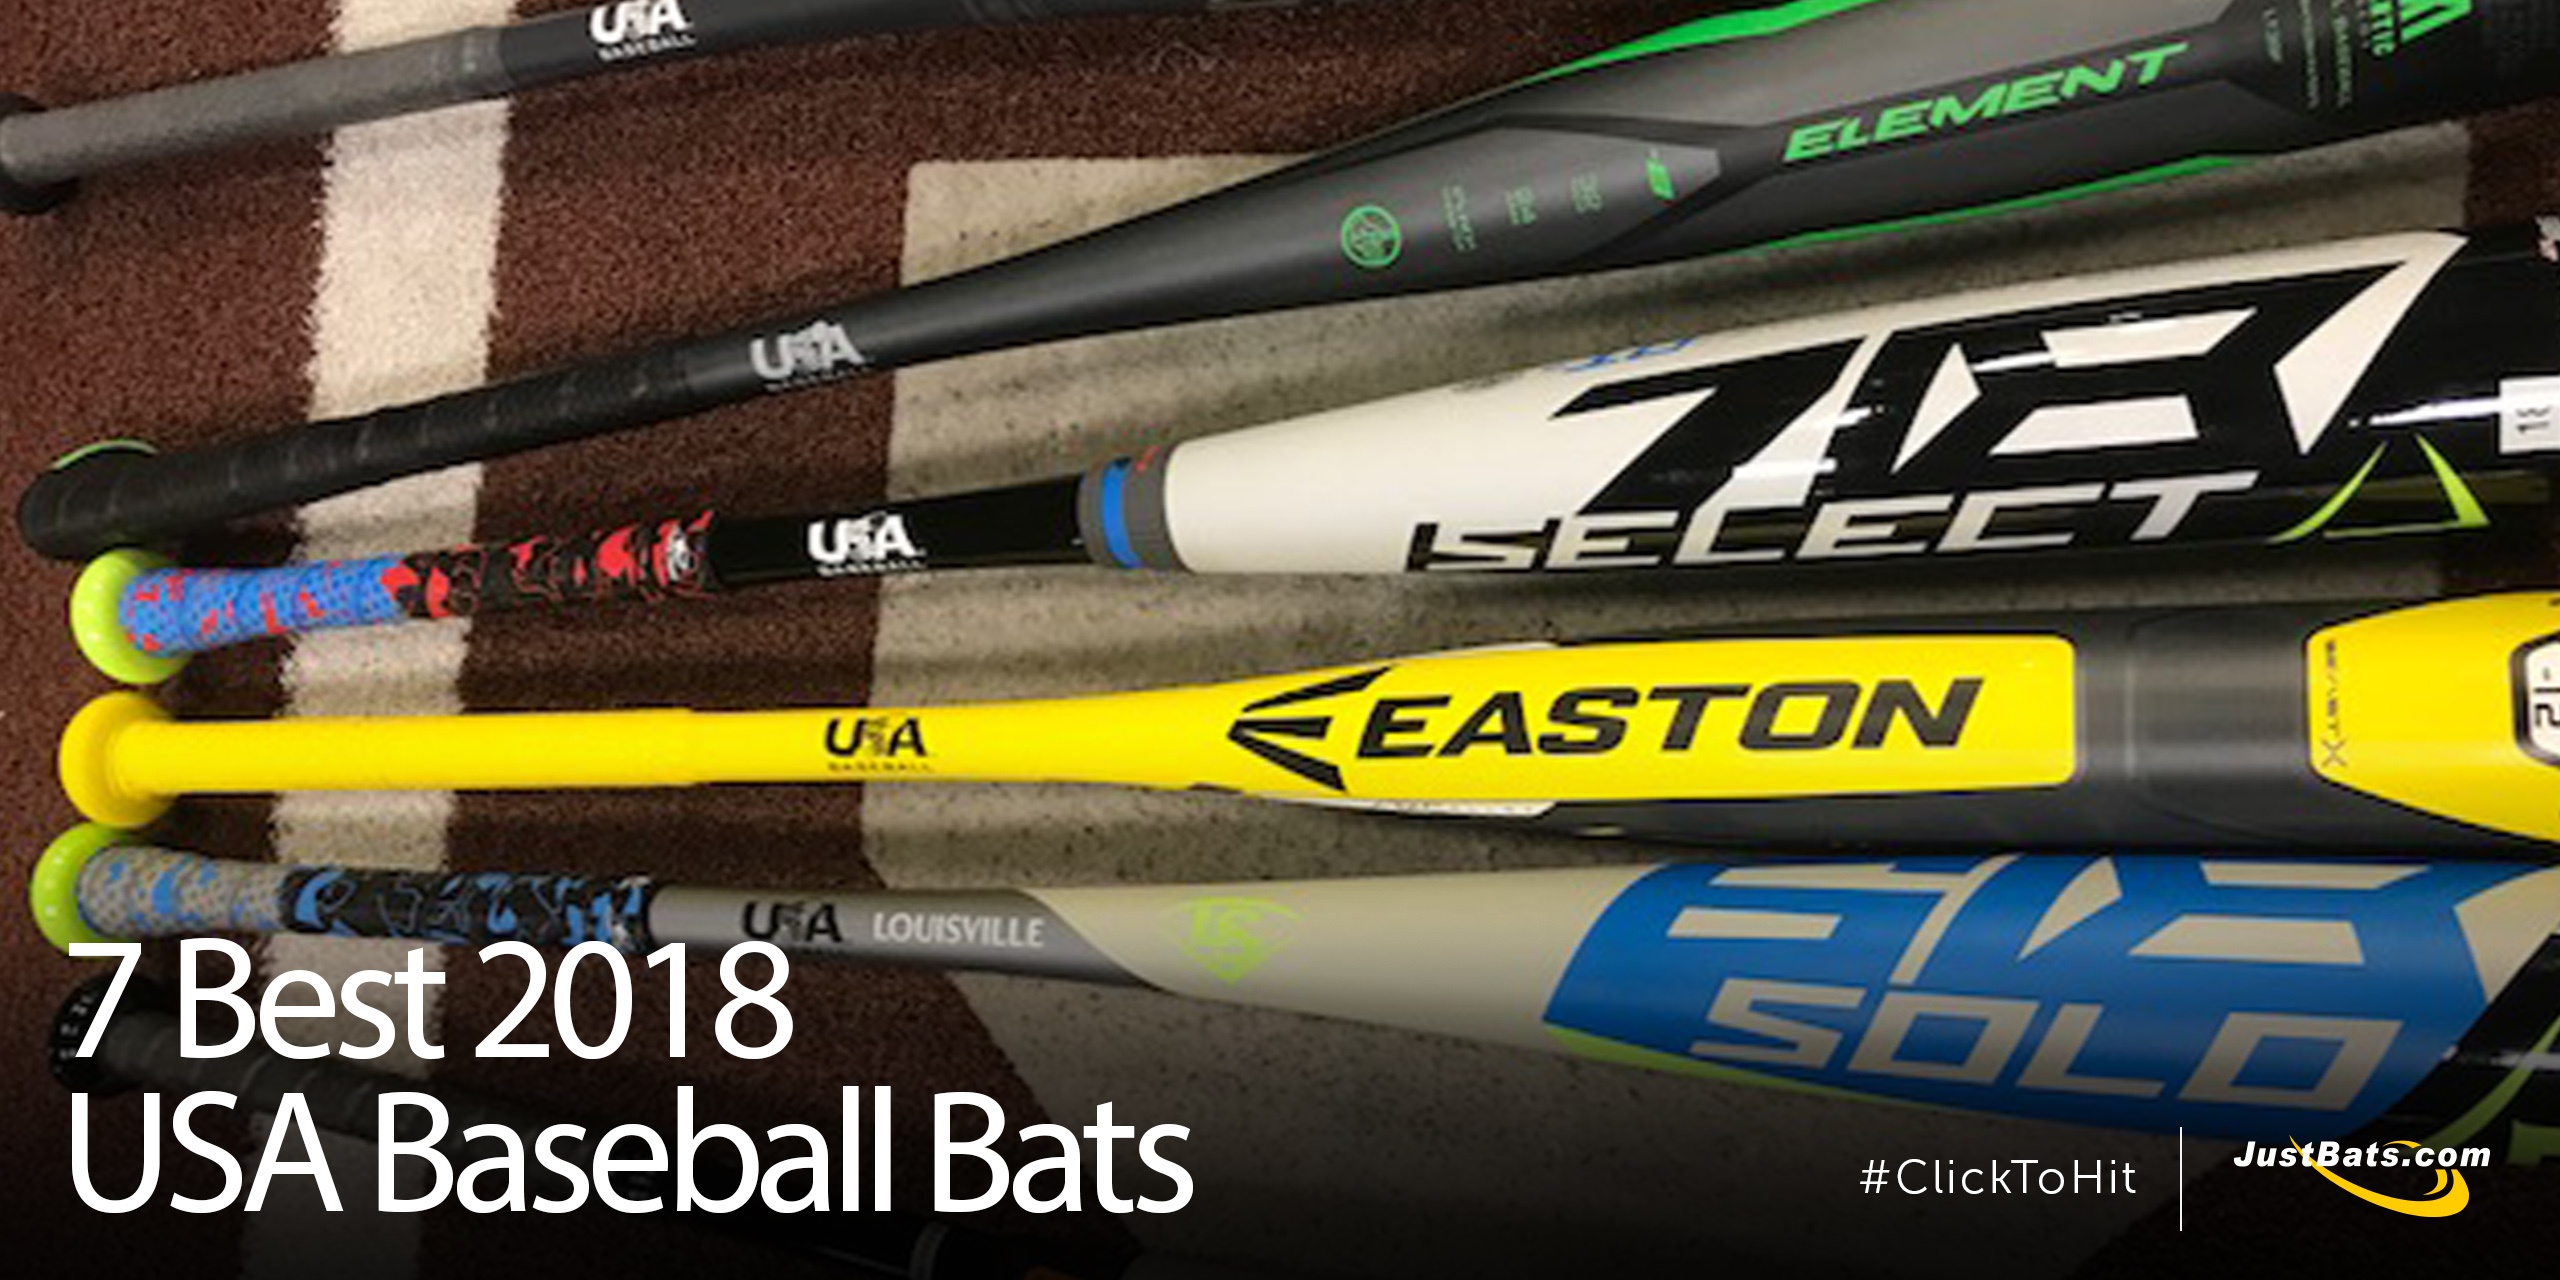 7 Best 2018 USA Baseball Bats - Blog.jpg